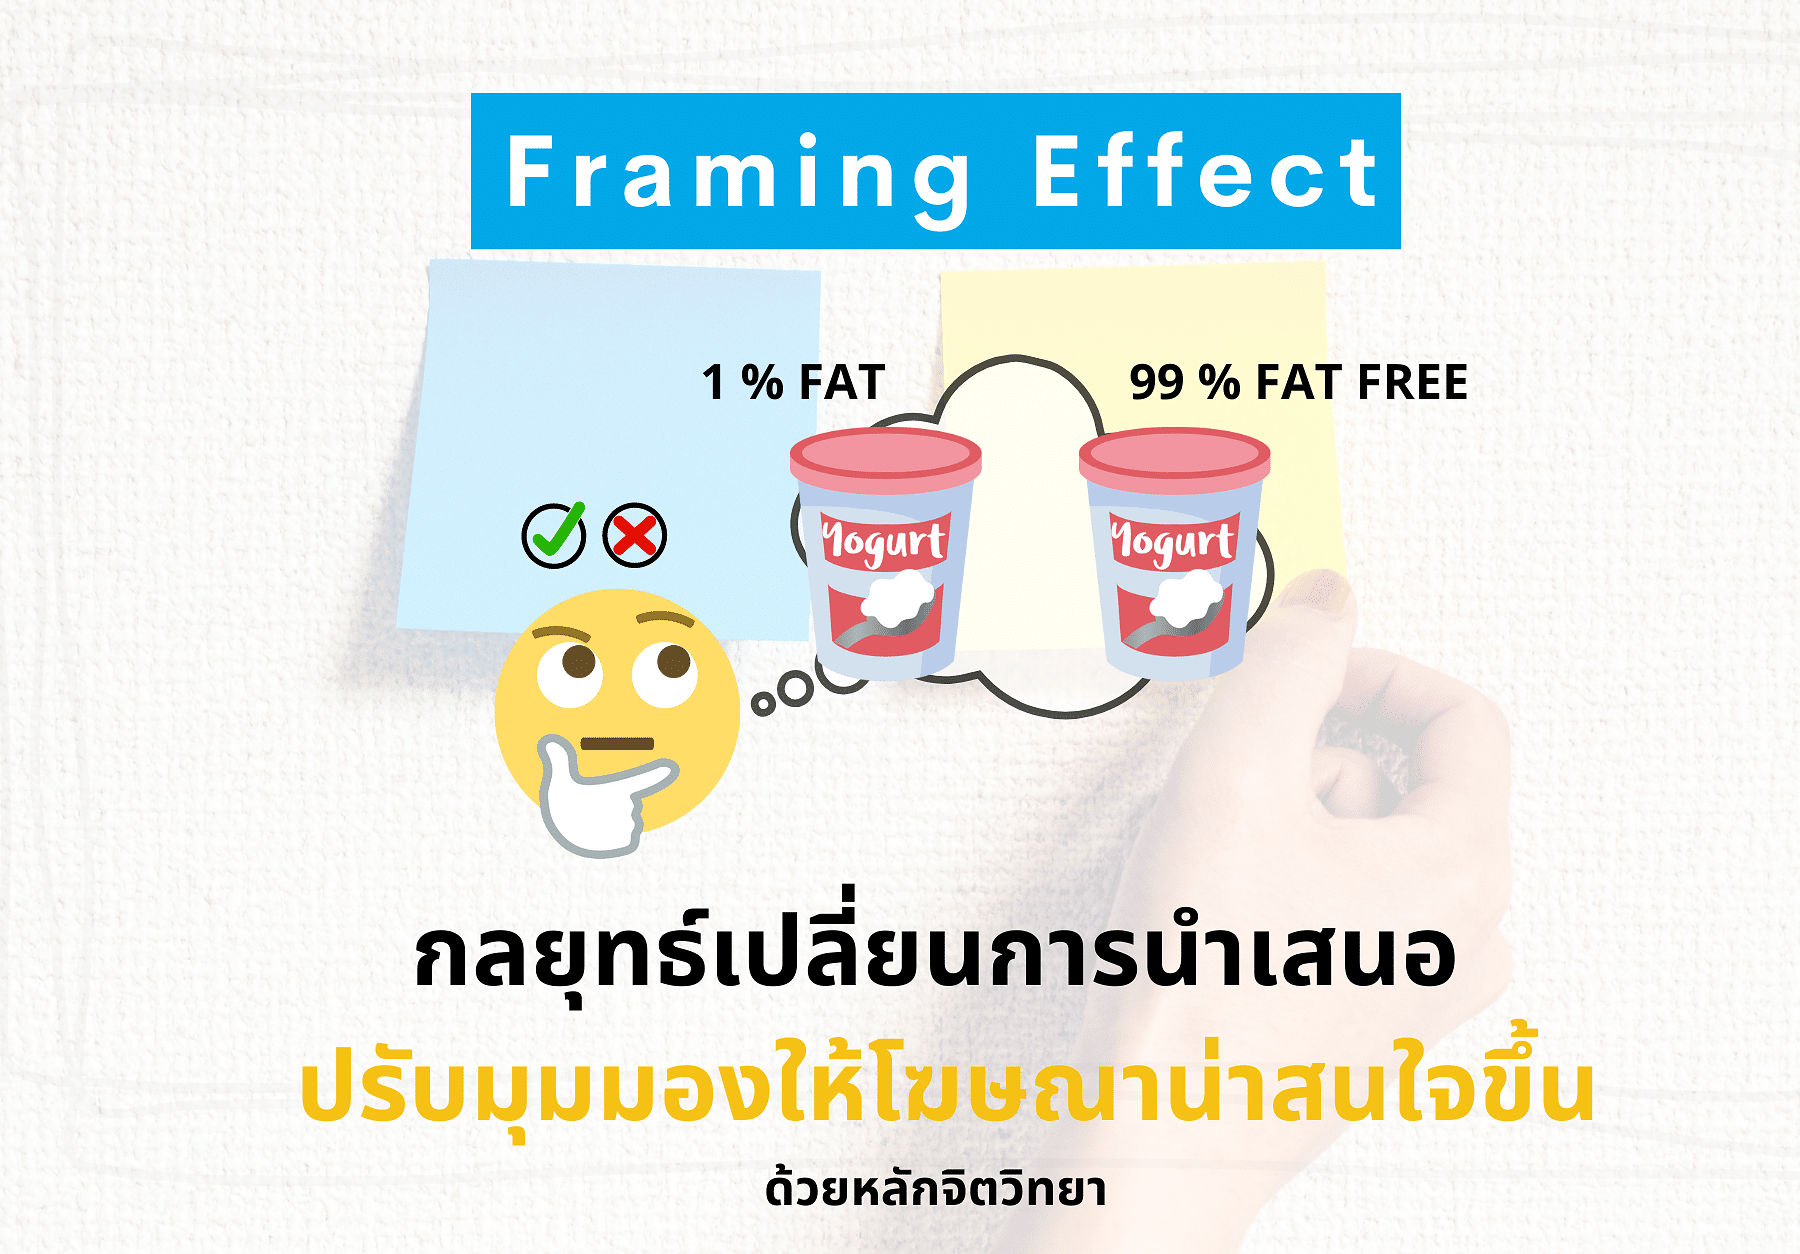 Framing Effect เปลี่ยนการนำเสนอให้โฆษณาน่าสนใจขึ้นด้วยจิตวิทยา